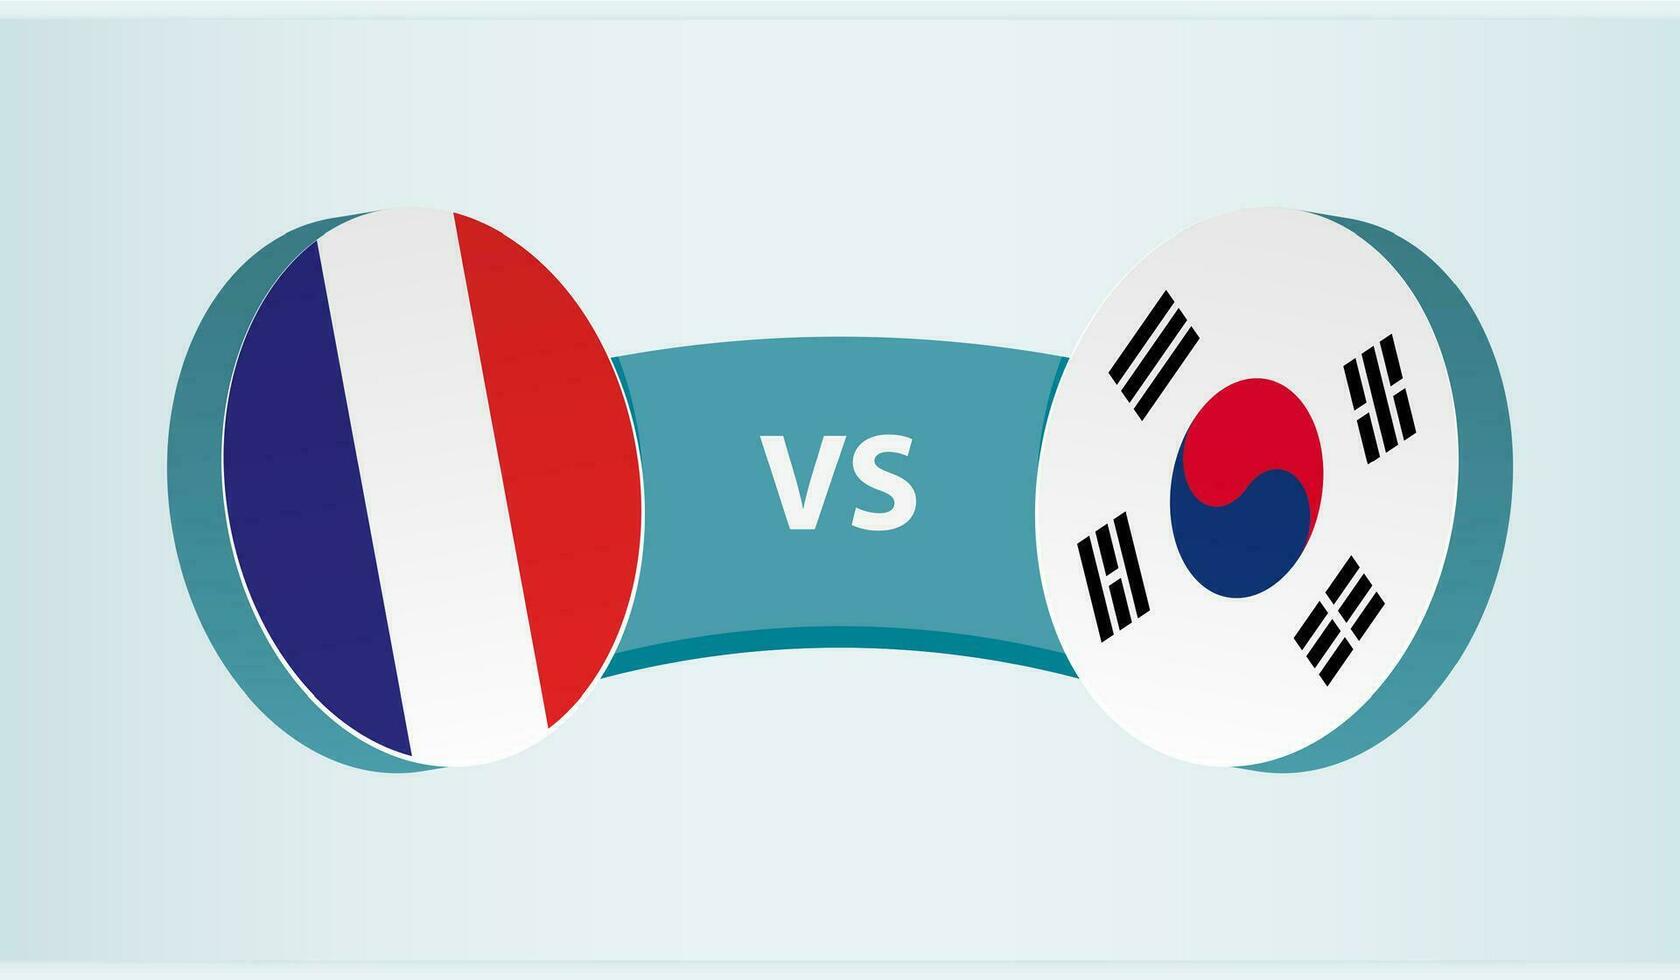 Francia versus sur Corea, equipo Deportes competencia concepto. vector